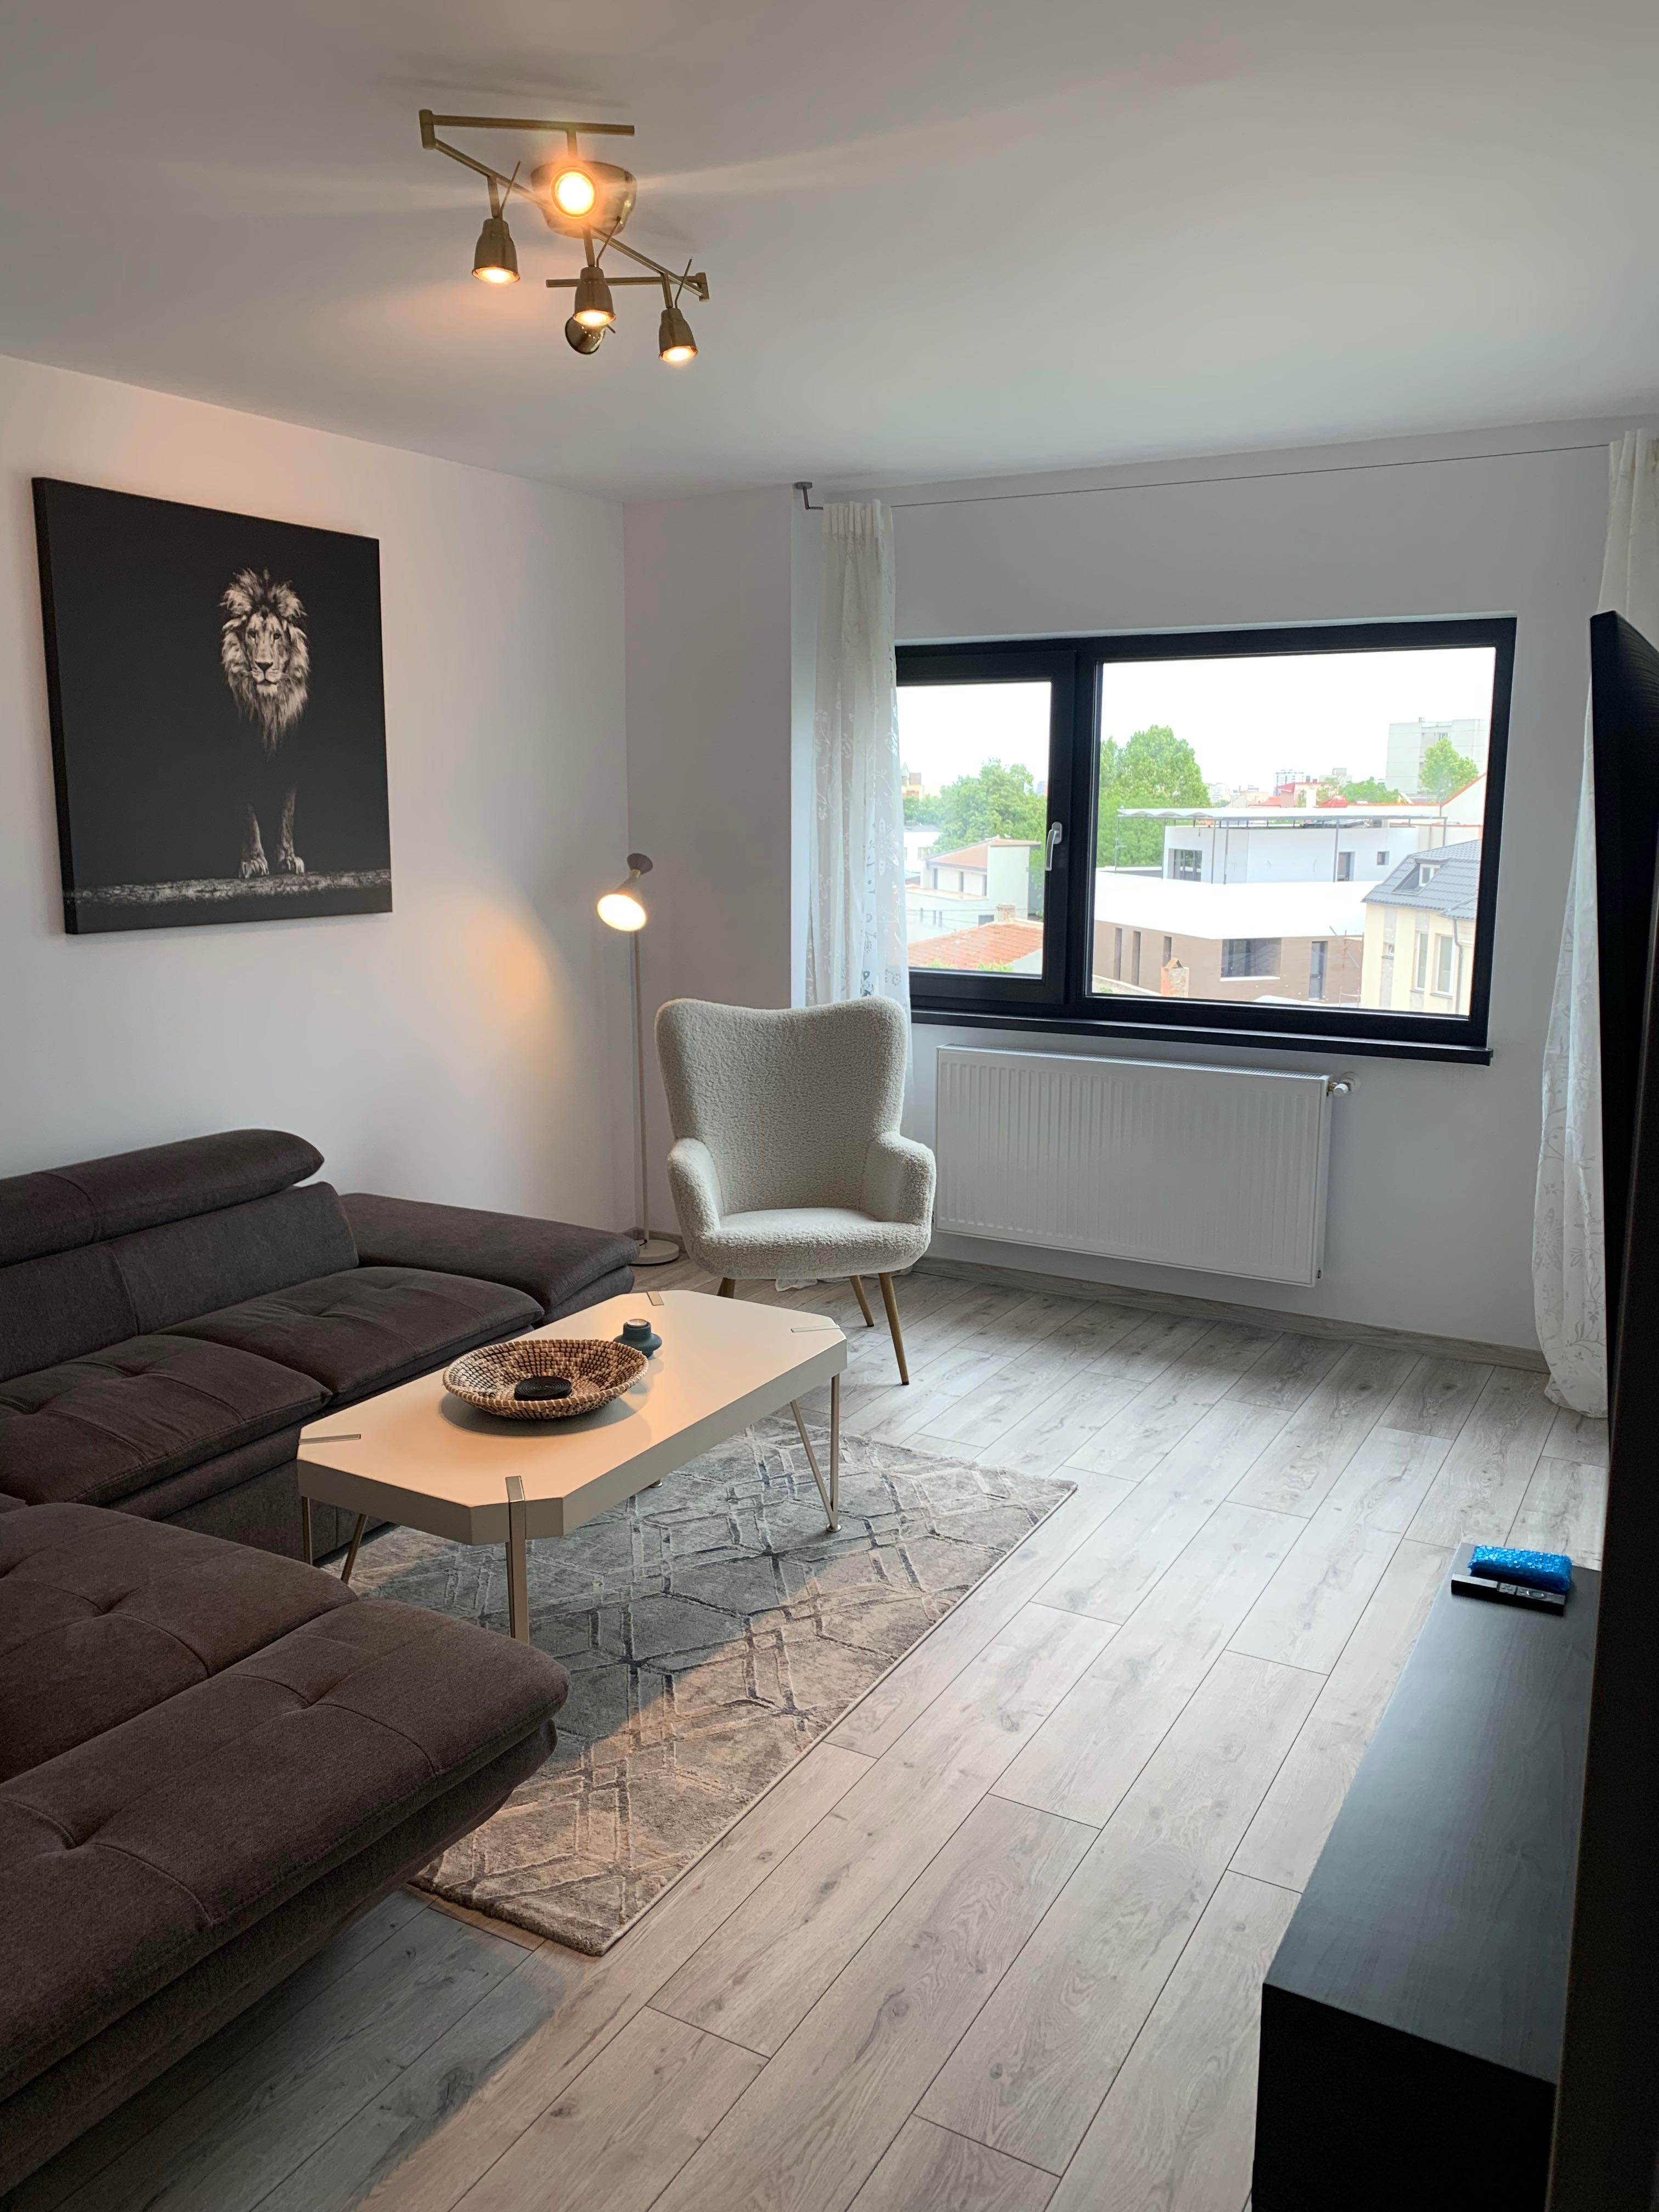 Inchiriez apartament 2 camere pe termen lung 700 euro / luna